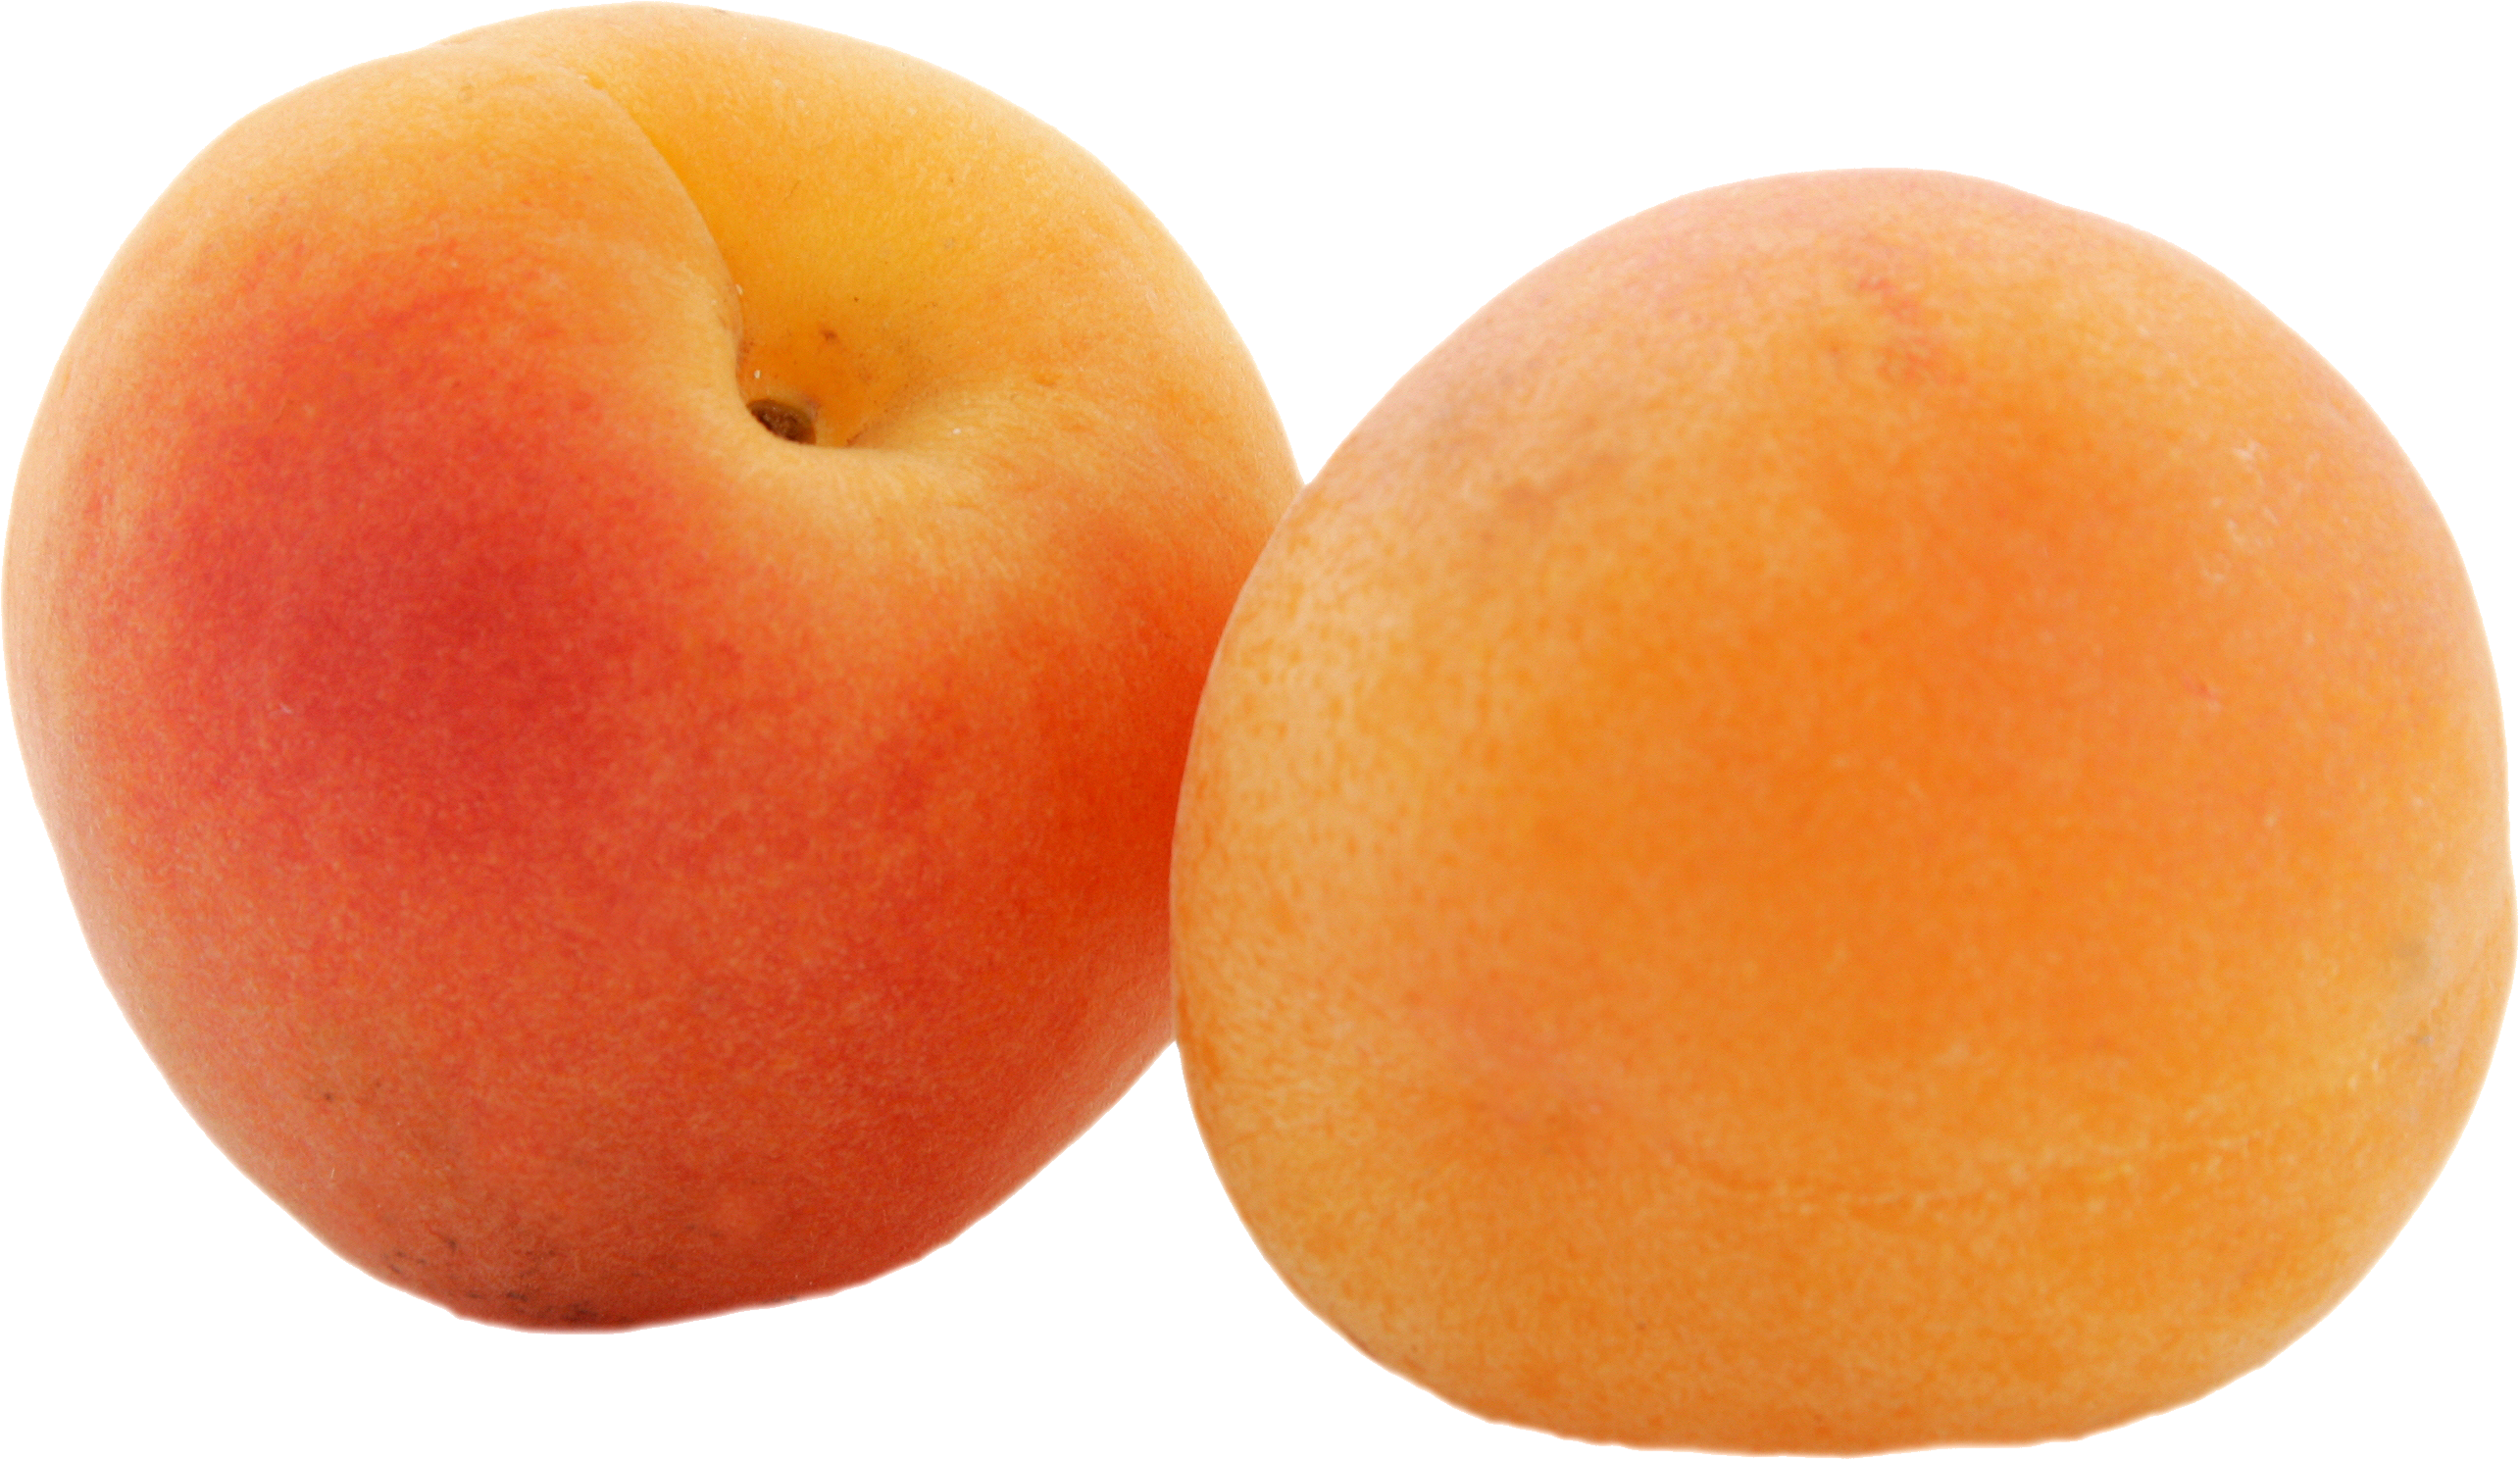 Deux abricots